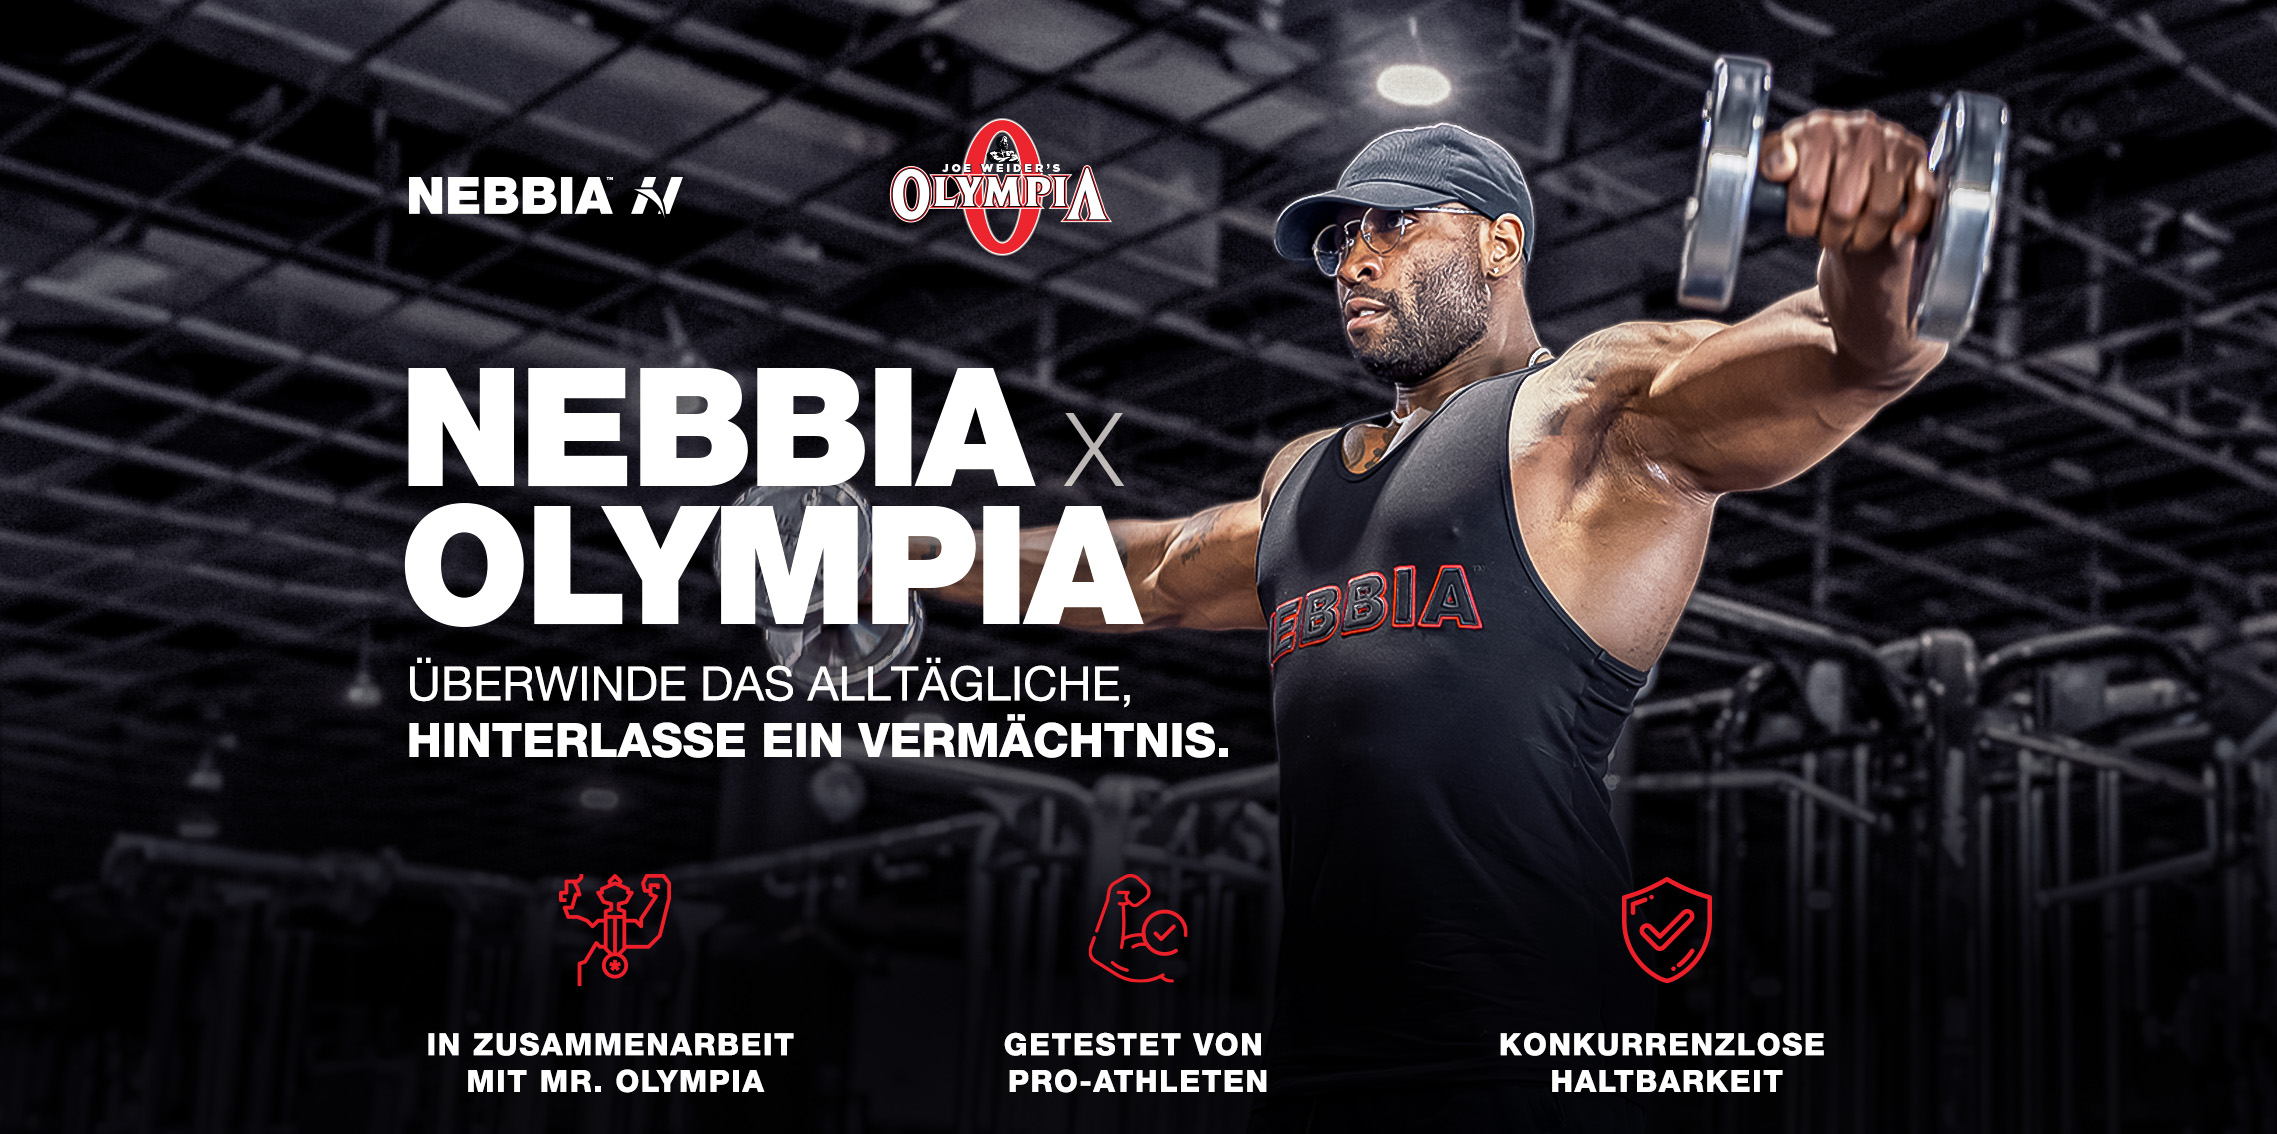 NEBBIA Fitness & bodybuilding Kleidung für neue Herrenkollektion NEBBIA x OLYMPIA